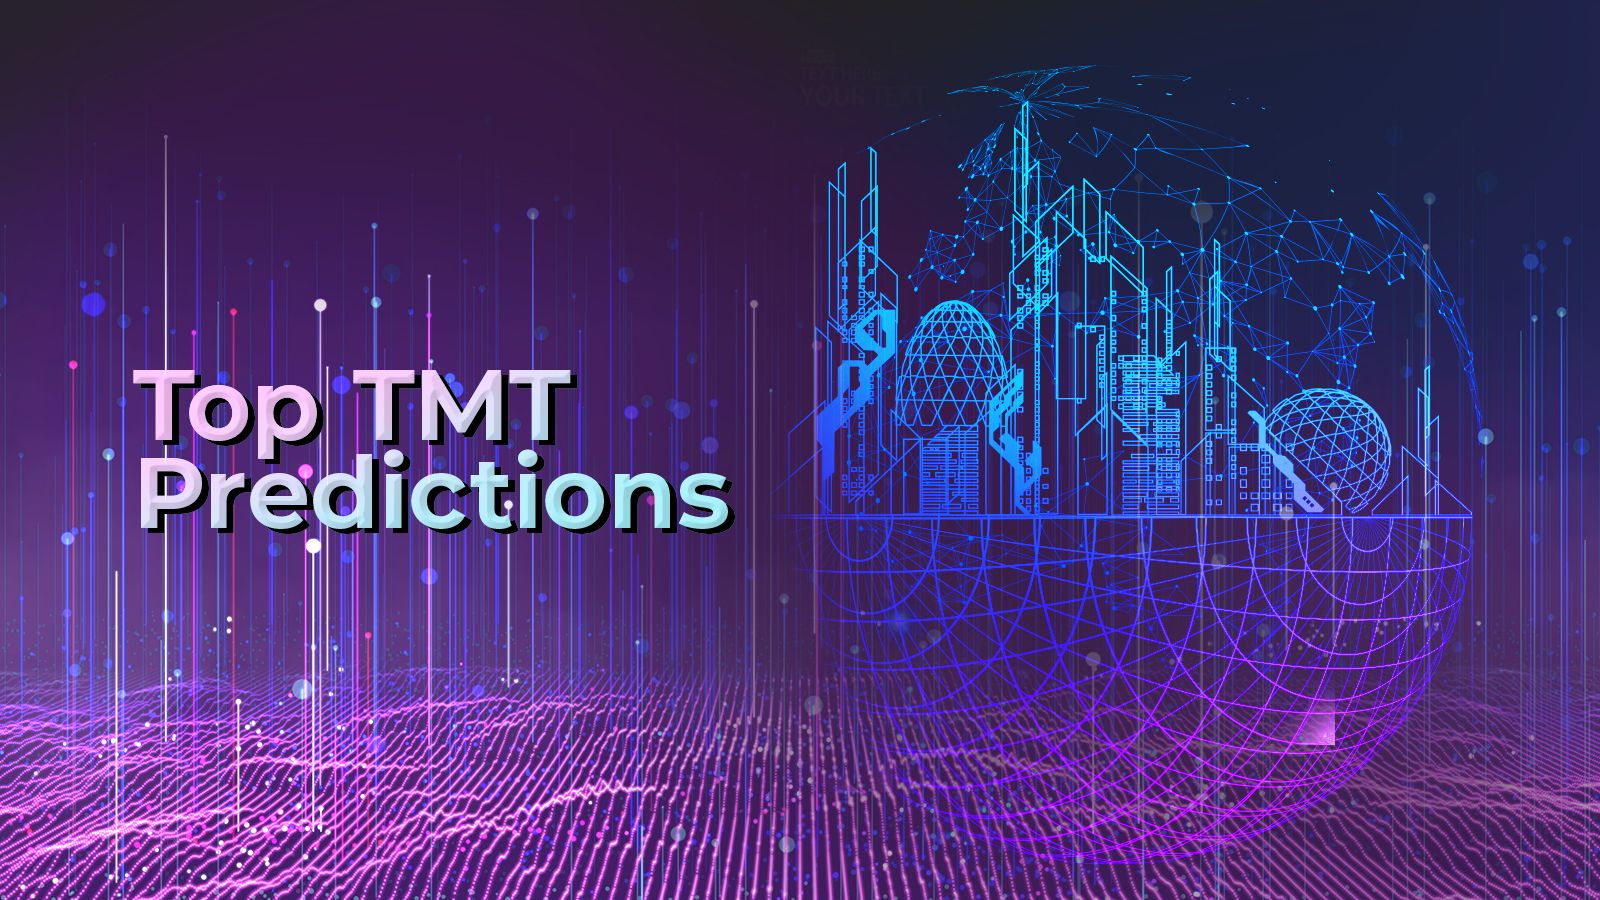 Top TMT Predictions